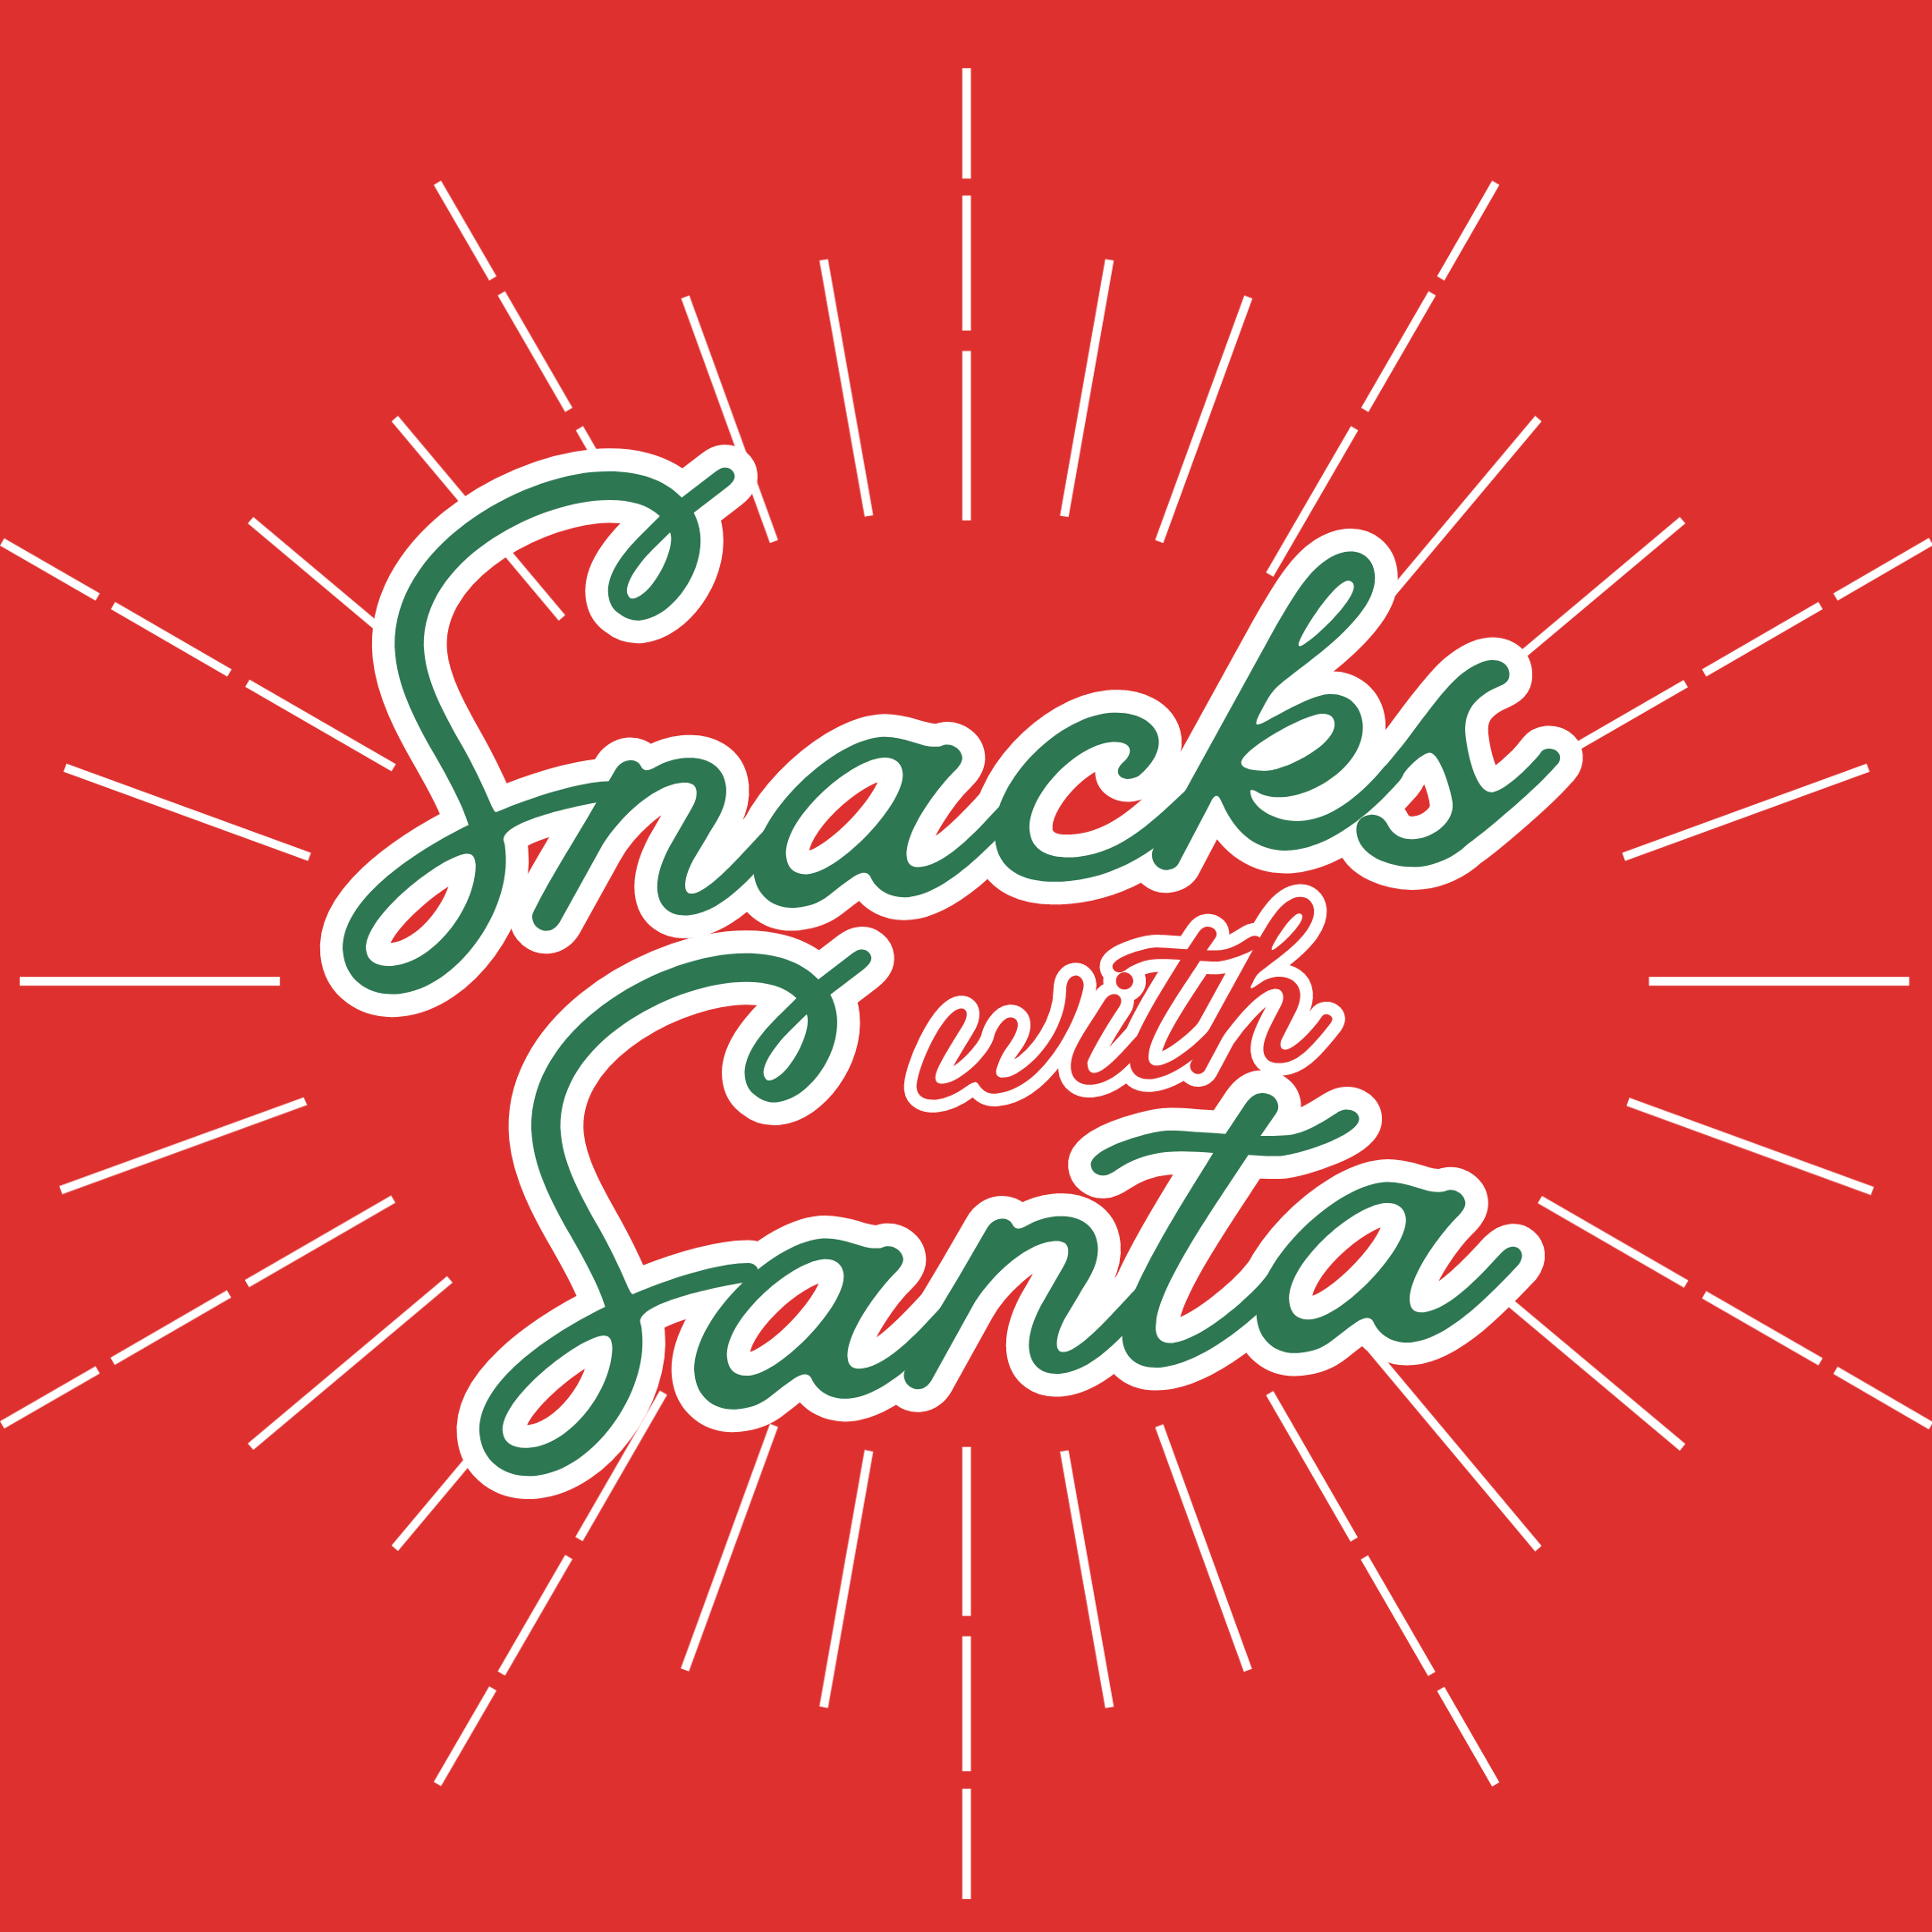 Snacks with Santa